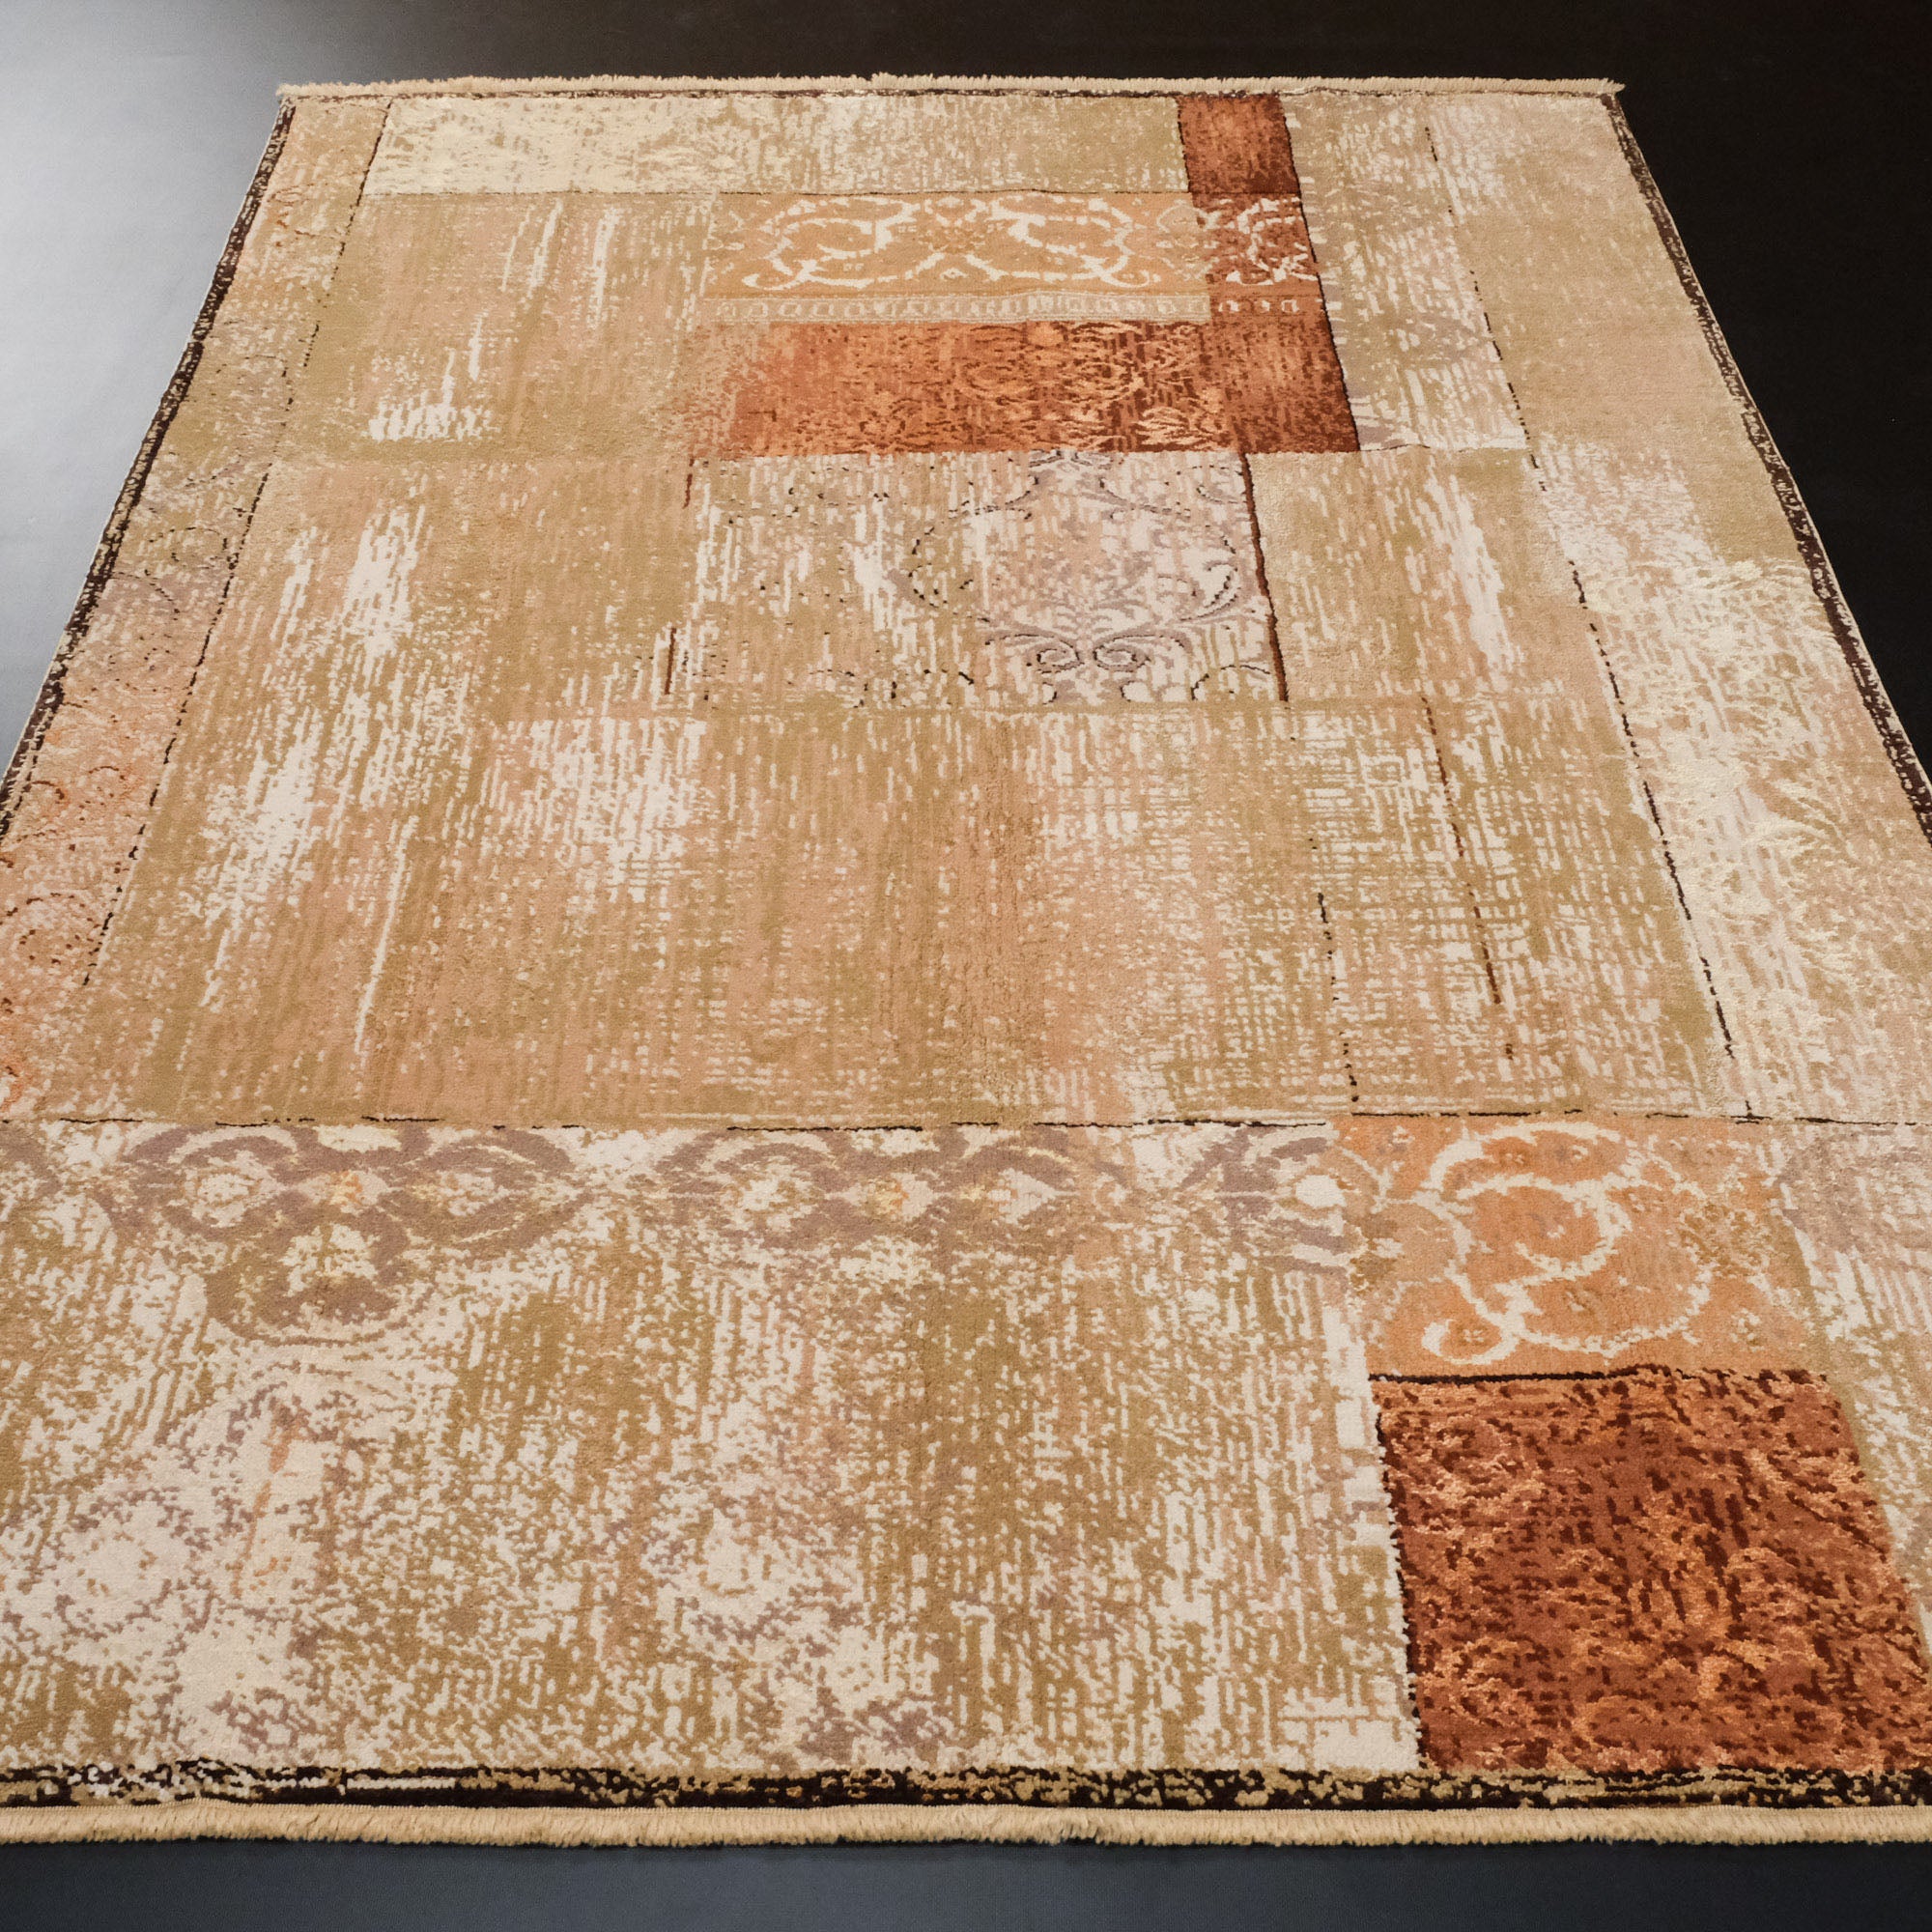 Hand Woven Beige Vintage Patterned Silk Carpet